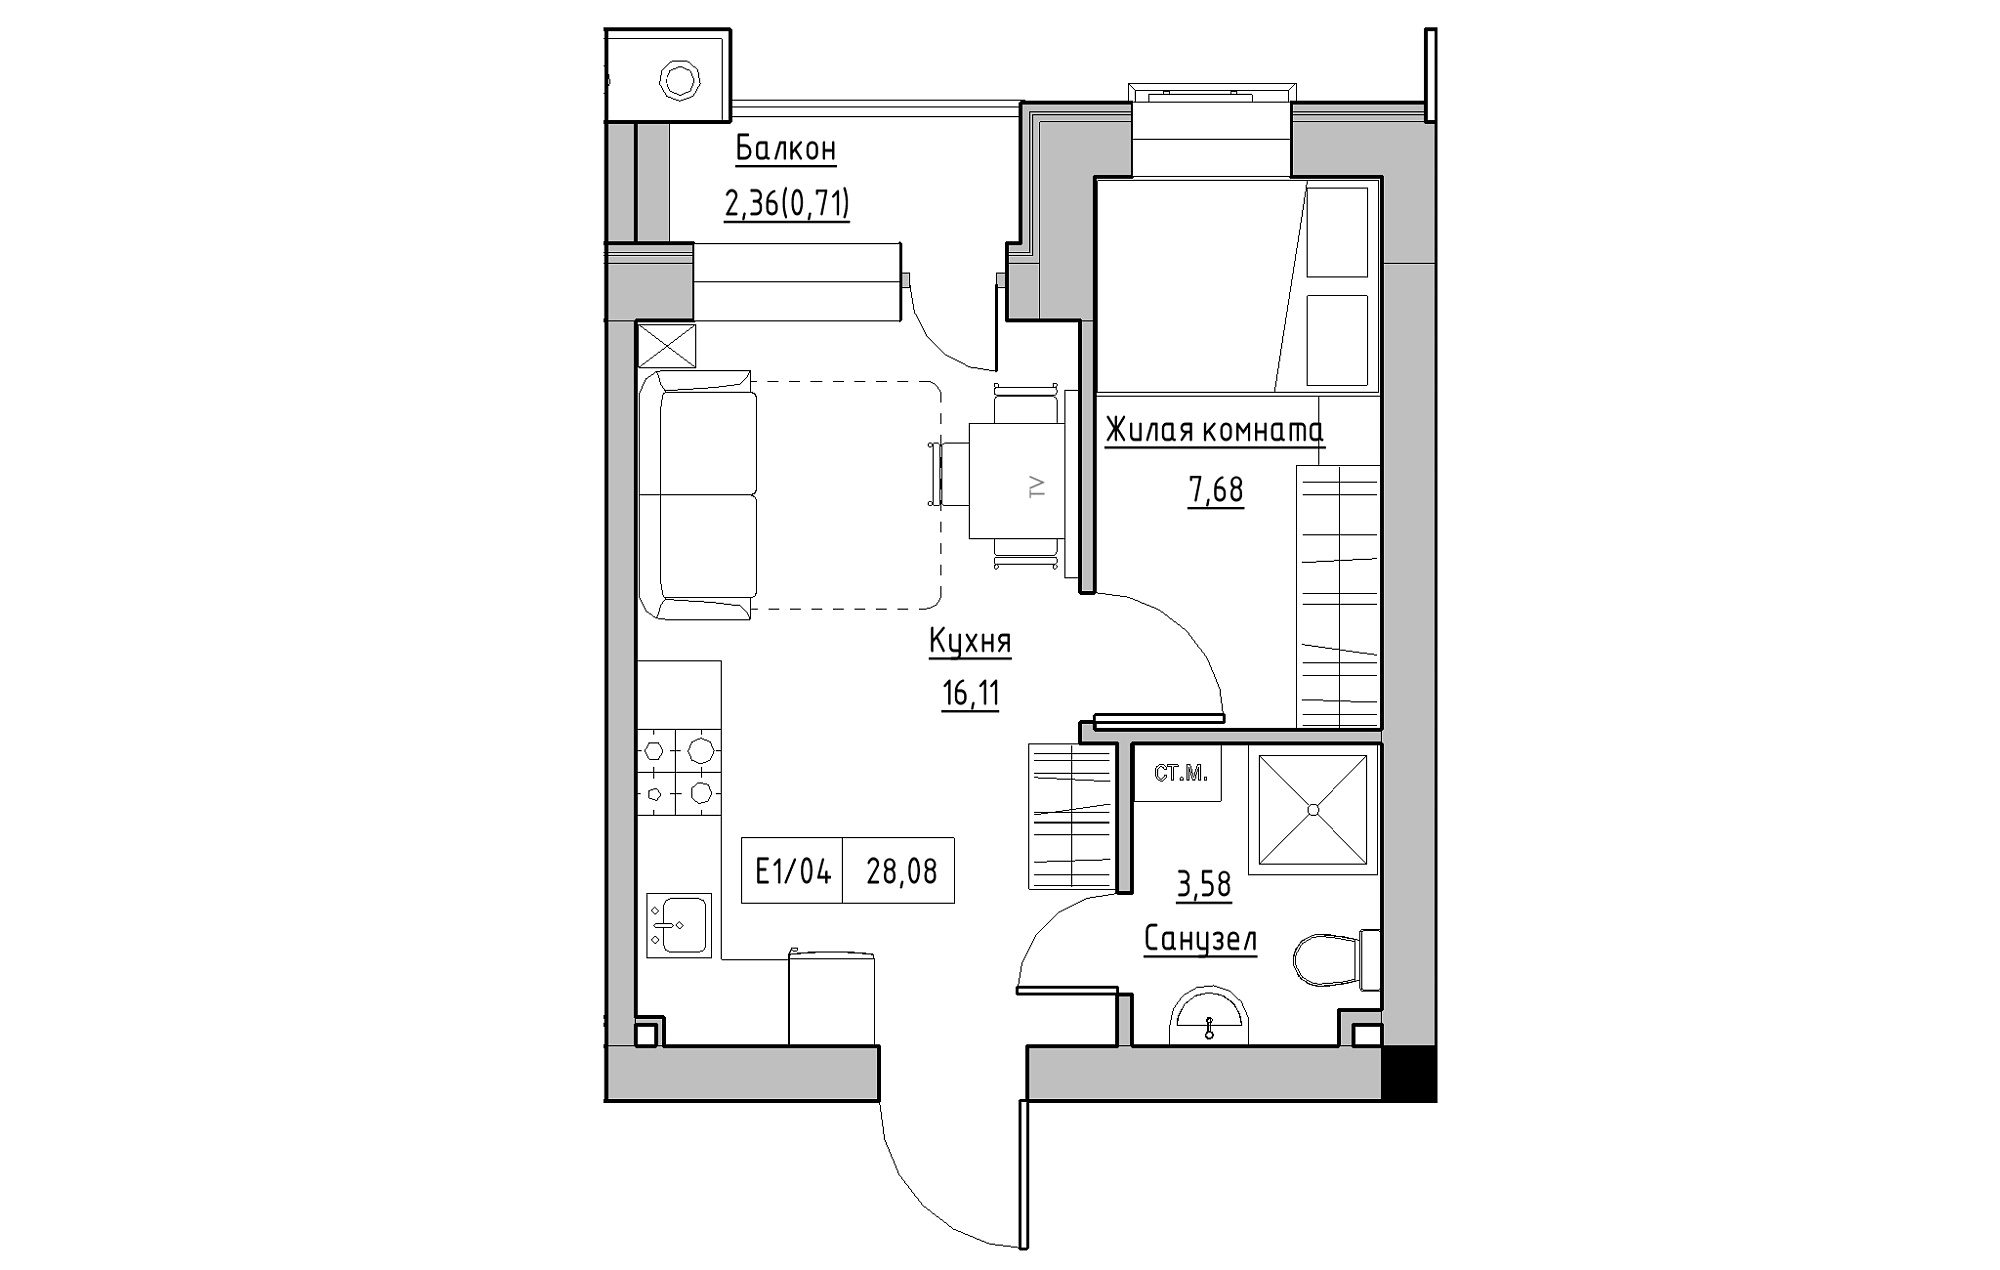 Планування 1-к квартира площею 28.08м2, KS-013-05/0010.